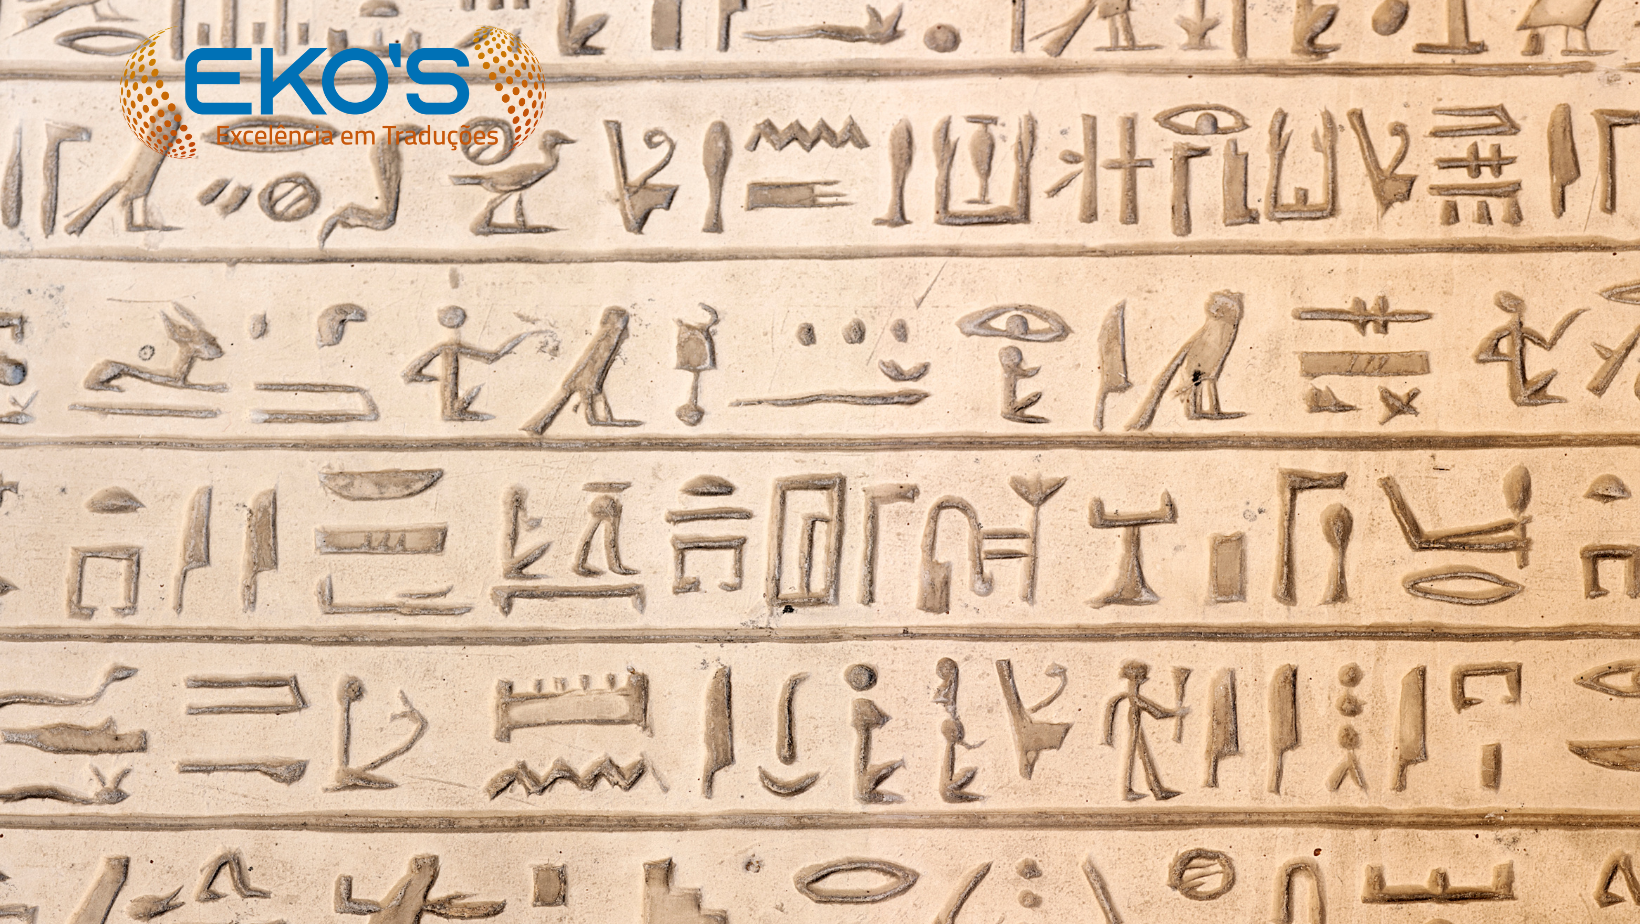 Houve algum outro método de 'tradução' dos hieróglifos sem ser